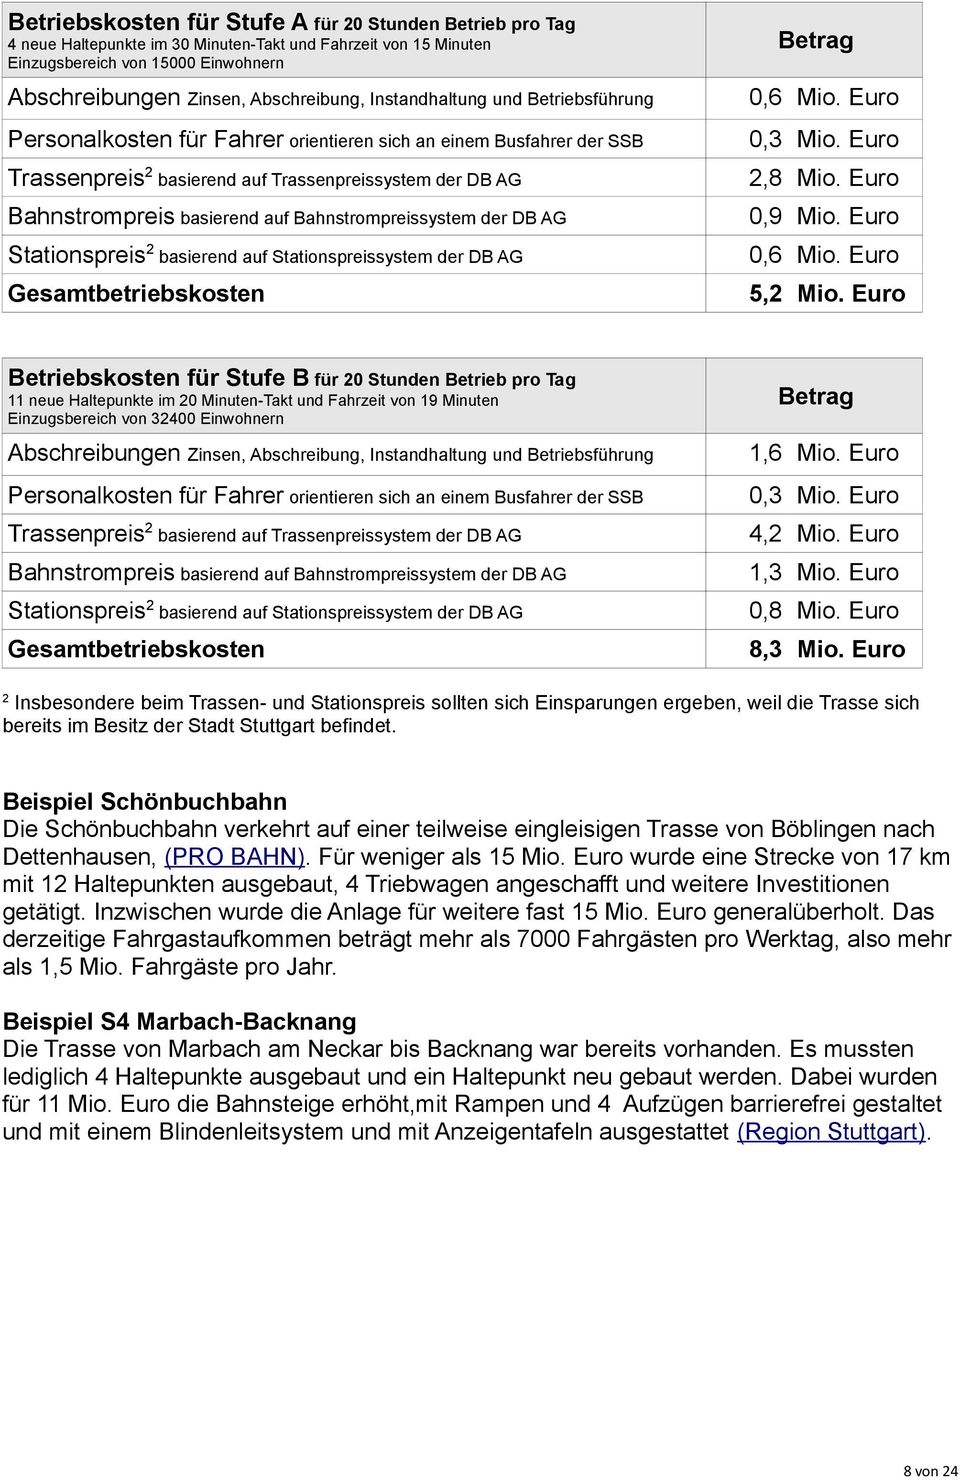 Euro Bahnstrompreis basierend auf Bahnstrompreissystem der DB AG 0,9 Mio. Euro Stationspreis 0,6 Mio.